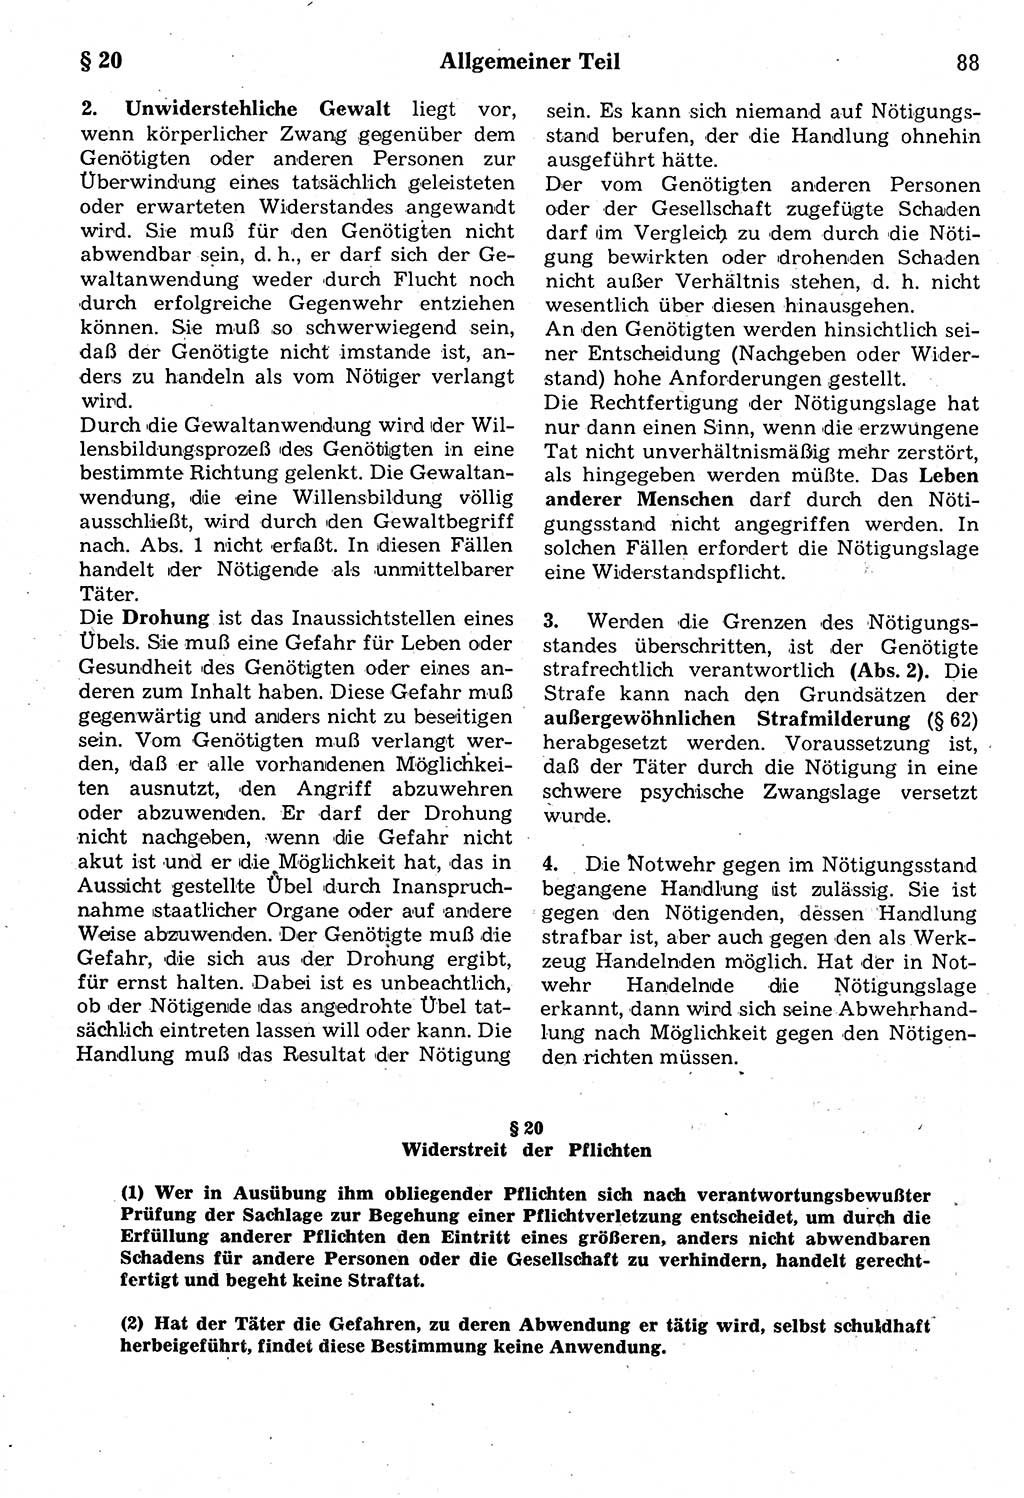 Strafrecht der Deutschen Demokratischen Republik (DDR), Kommentar zum Strafgesetzbuch (StGB) 1987, Seite 88 (Strafr. DDR Komm. StGB 1987, S. 88)